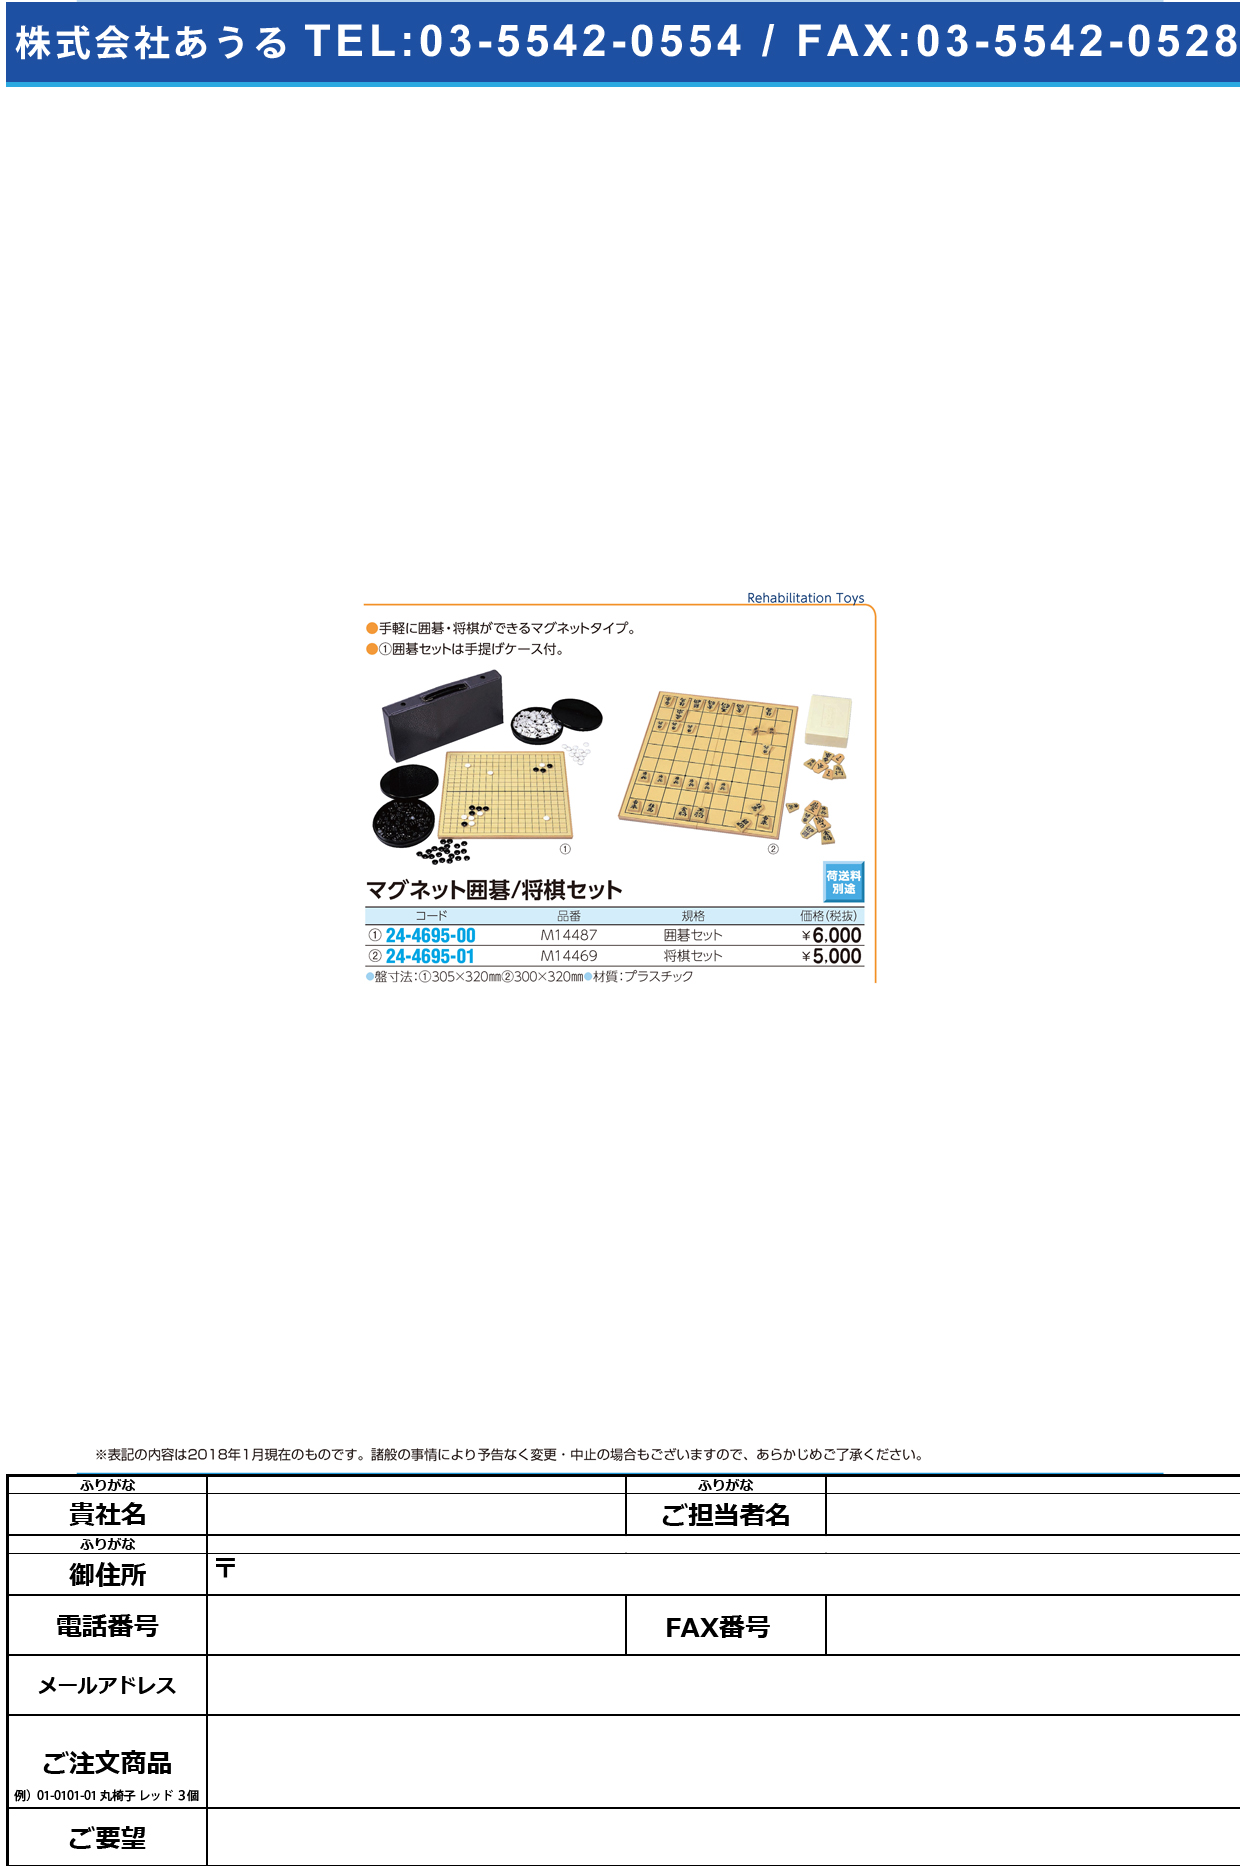 (24-4695-00)マグネット囲碁セット M14487(MG20) ﾏｸﾞﾈｯﾄｲｺﾞｾｯﾄ【1組単位】【2019年カタログ商品】